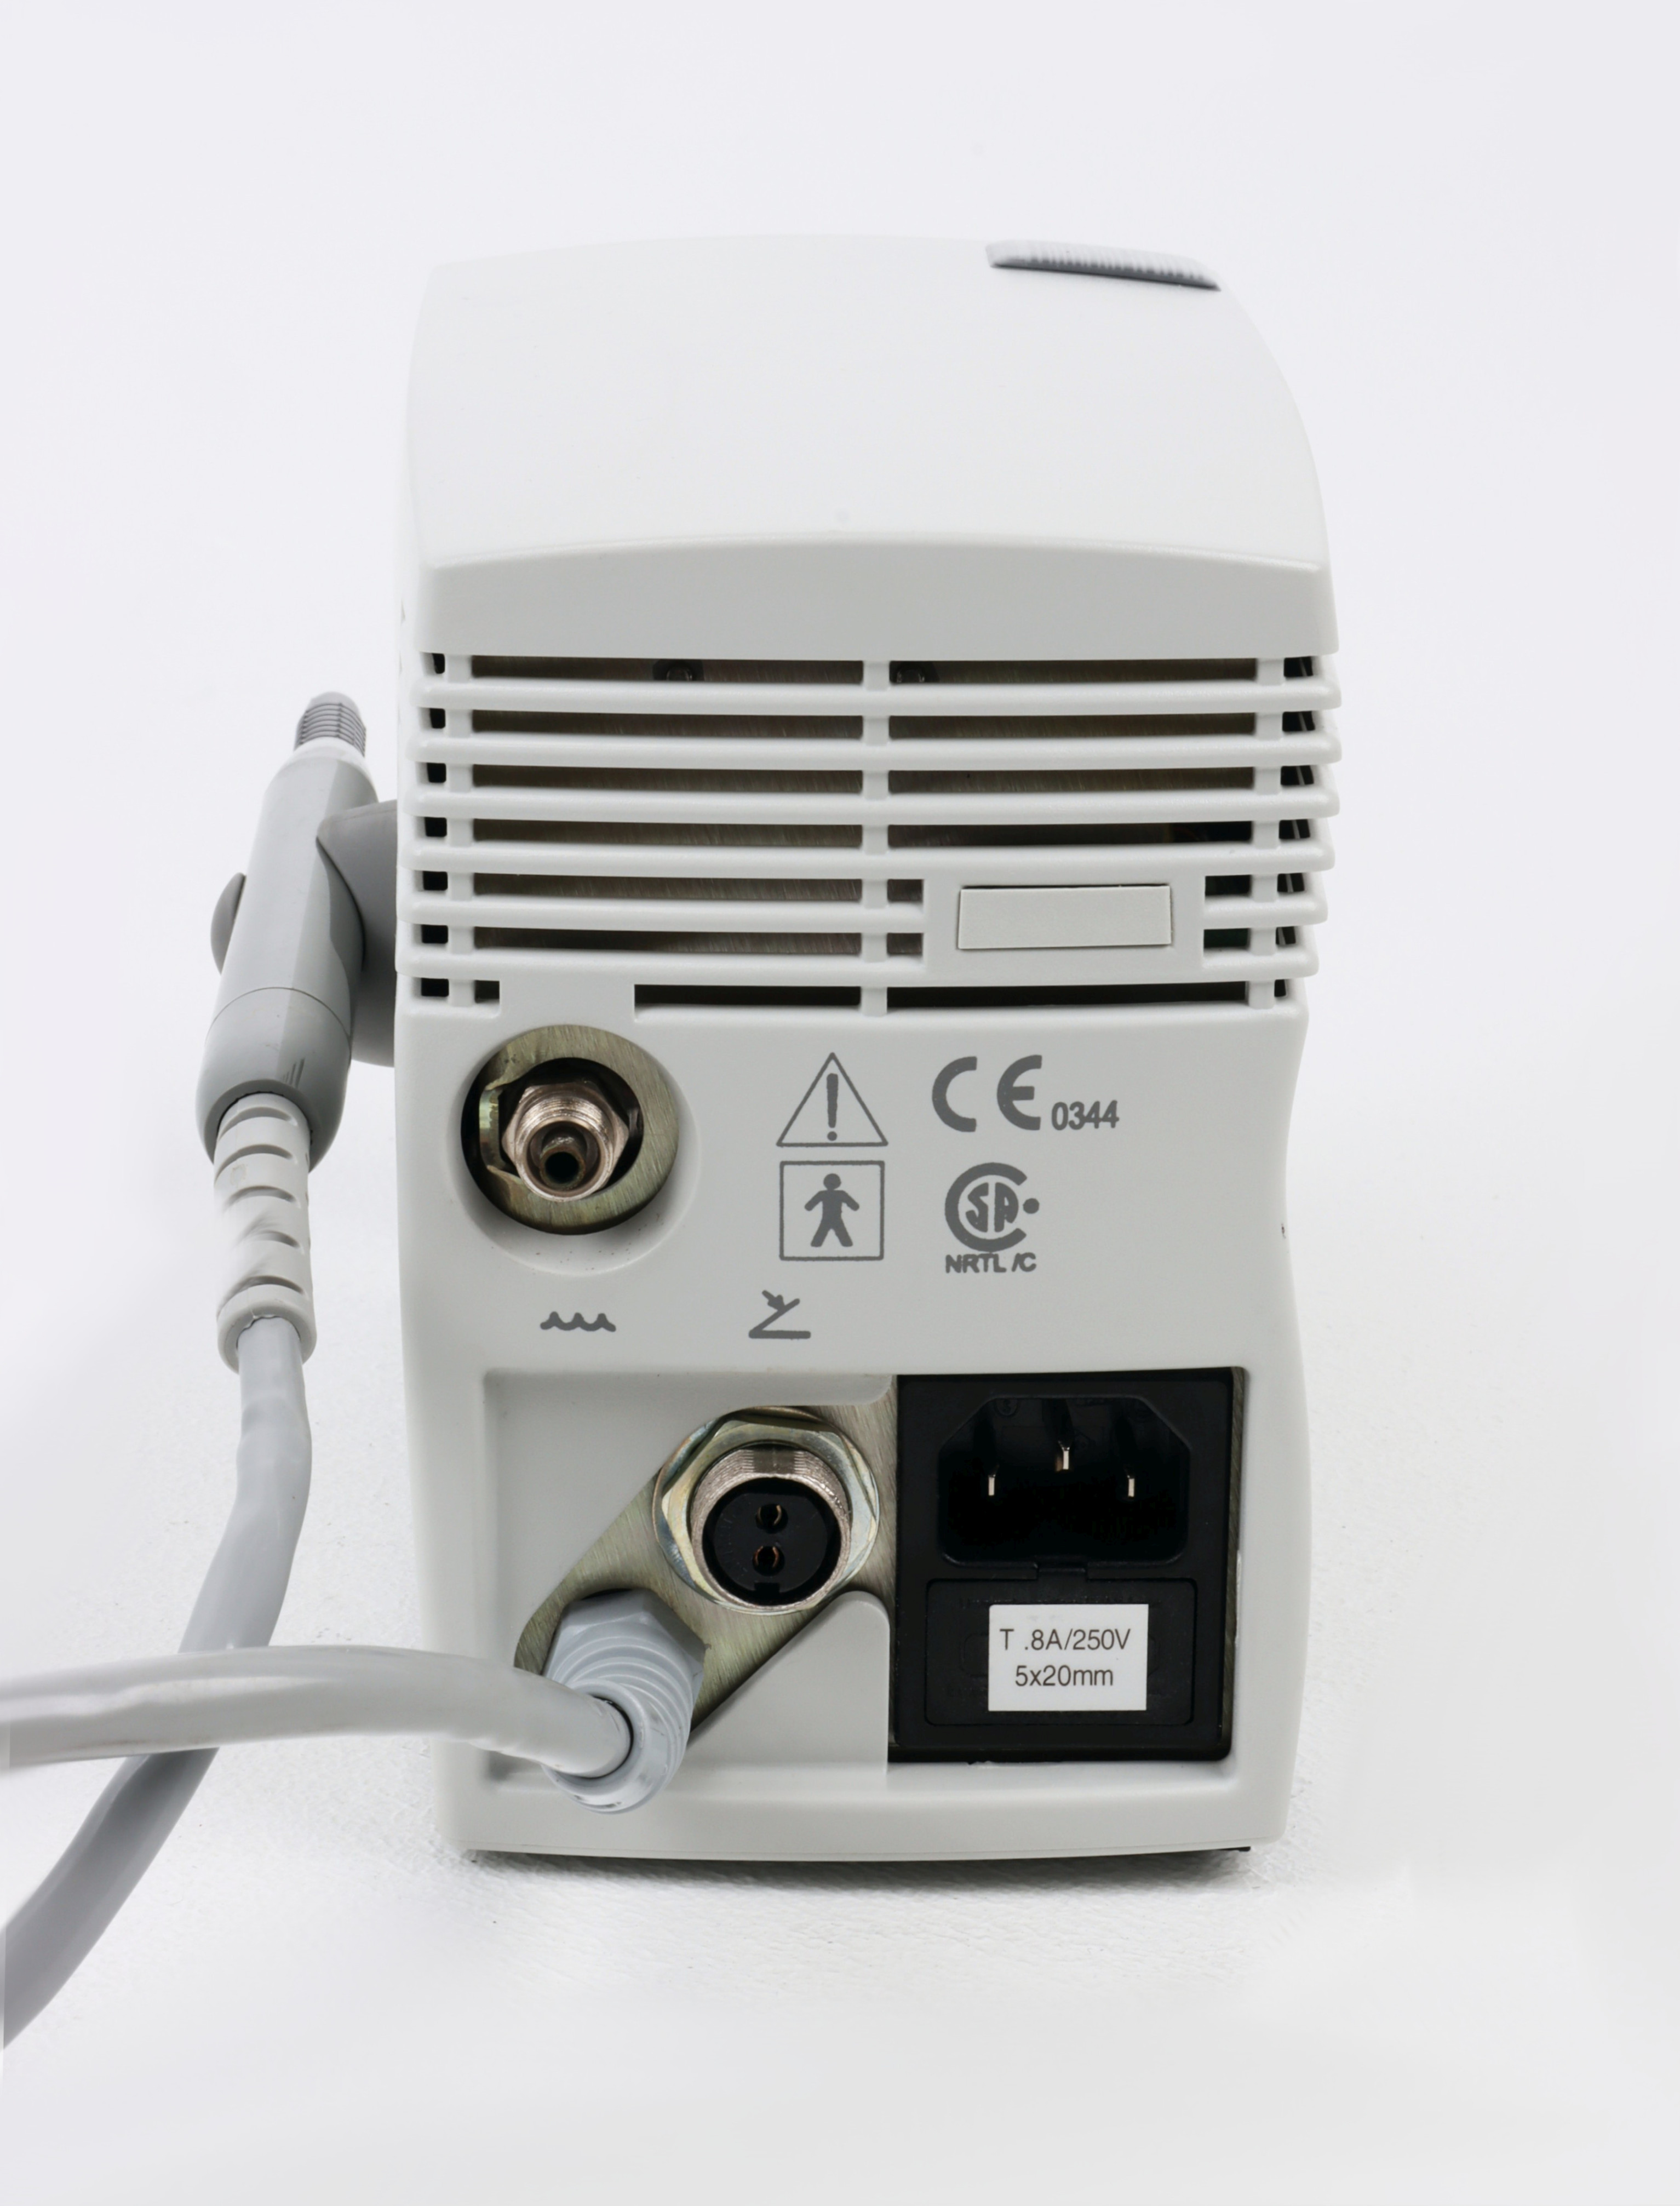 Kompresory do unitów stomatologicznych używane BIOSONIC US100 - 230CE - Praiston rekondycjonowane